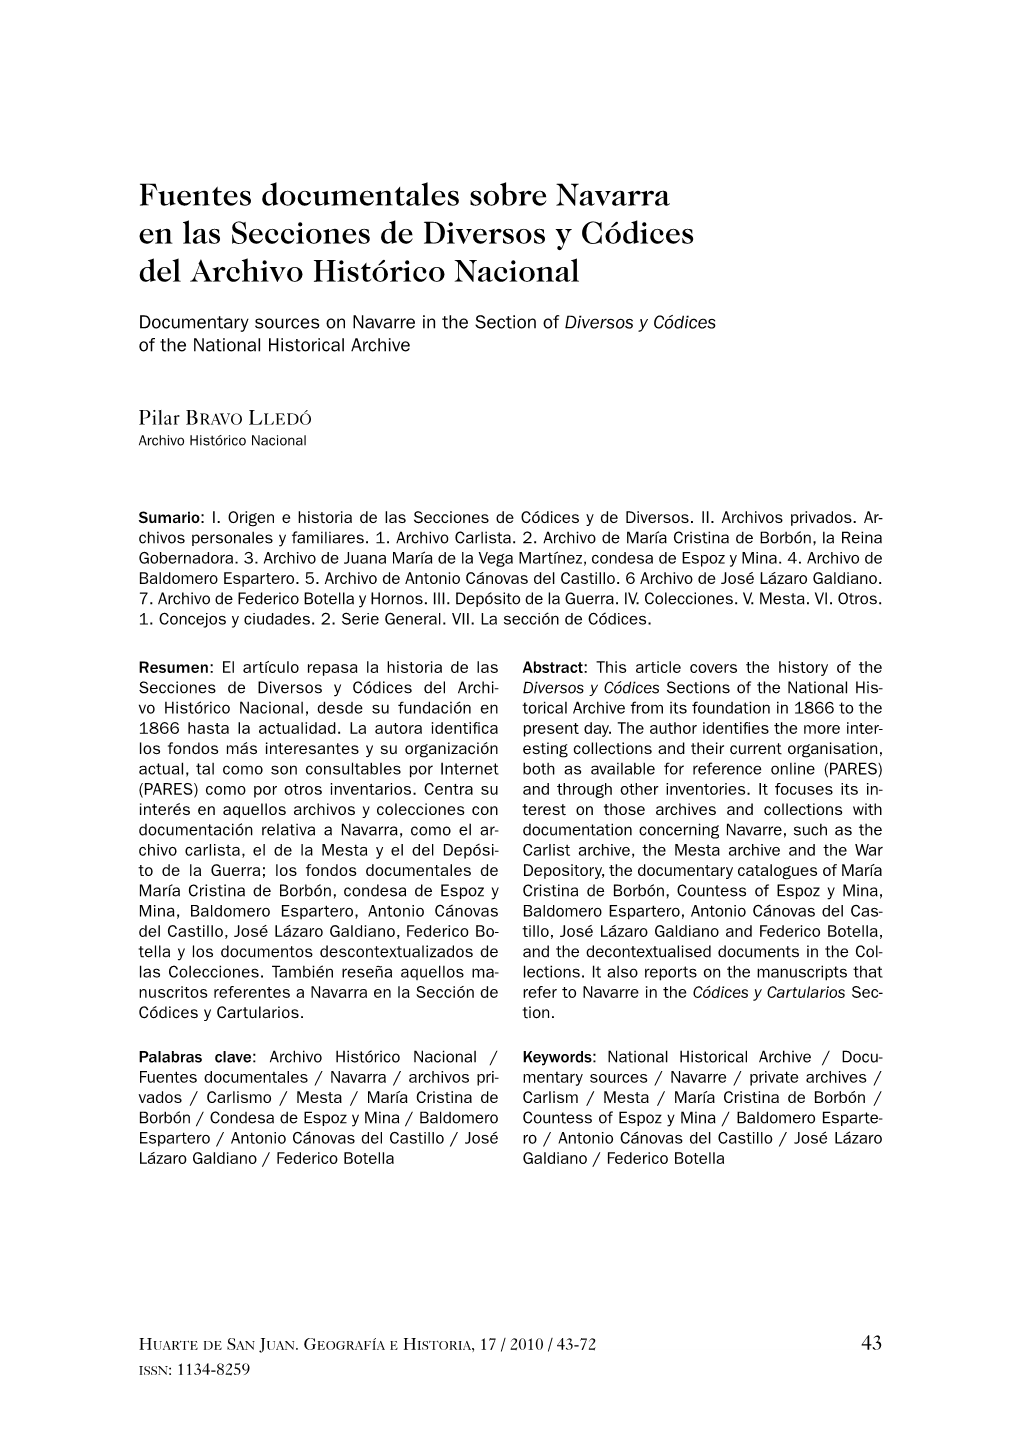 Fuentes Documentales Sobre Navarra En Las Secciones De Diversos Y Códices Del Archivo Histórico Nacional